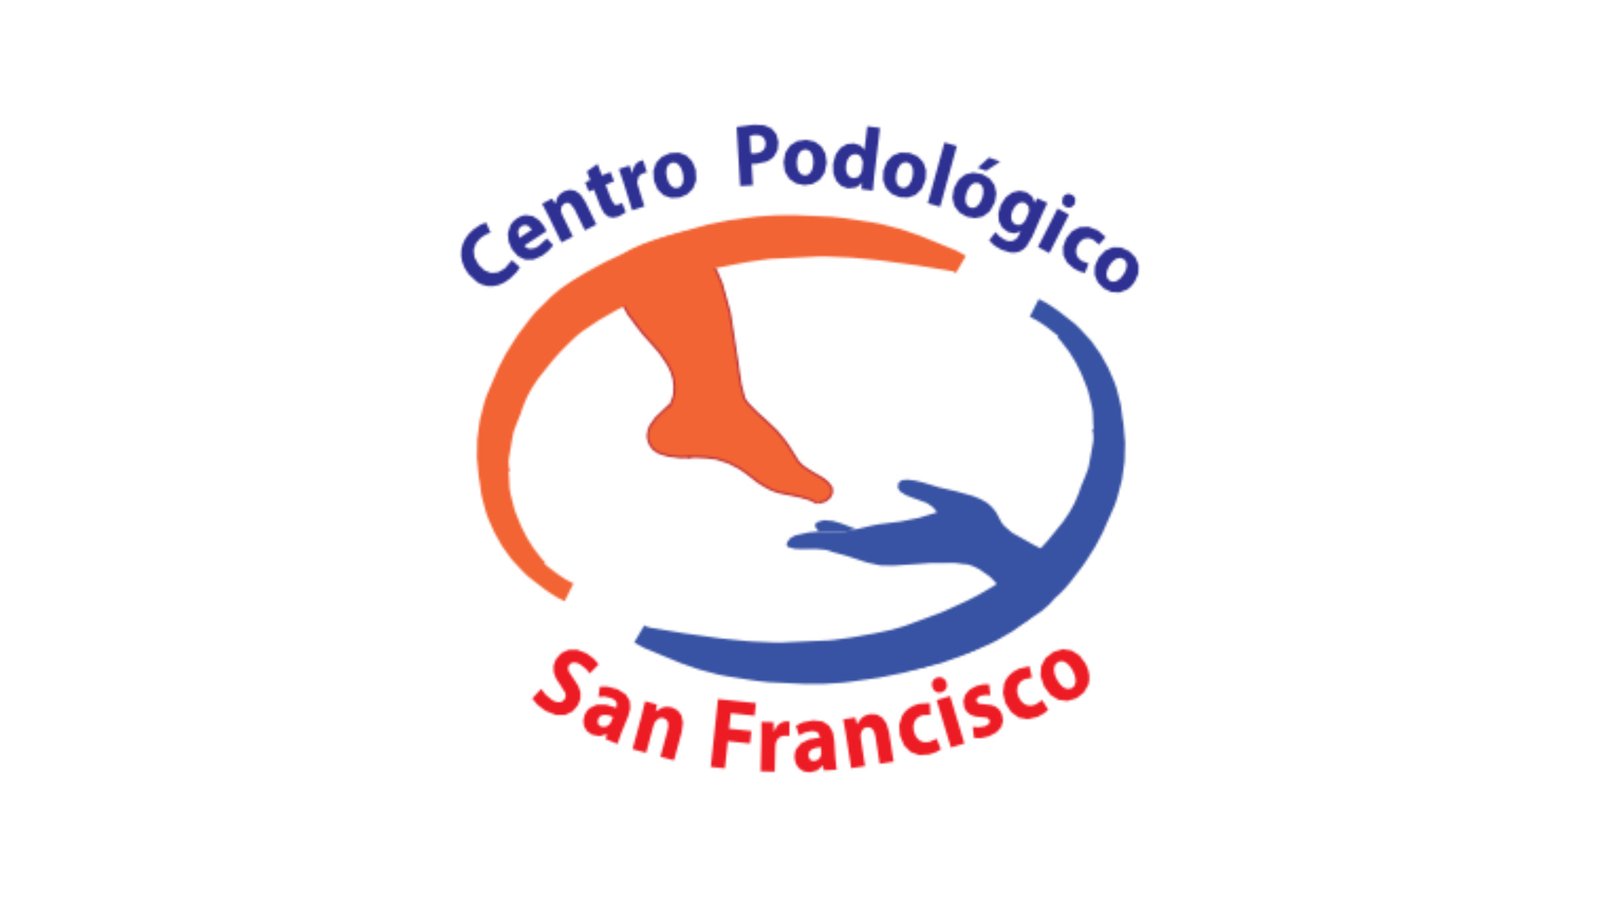 Centro Podológico San Francisco